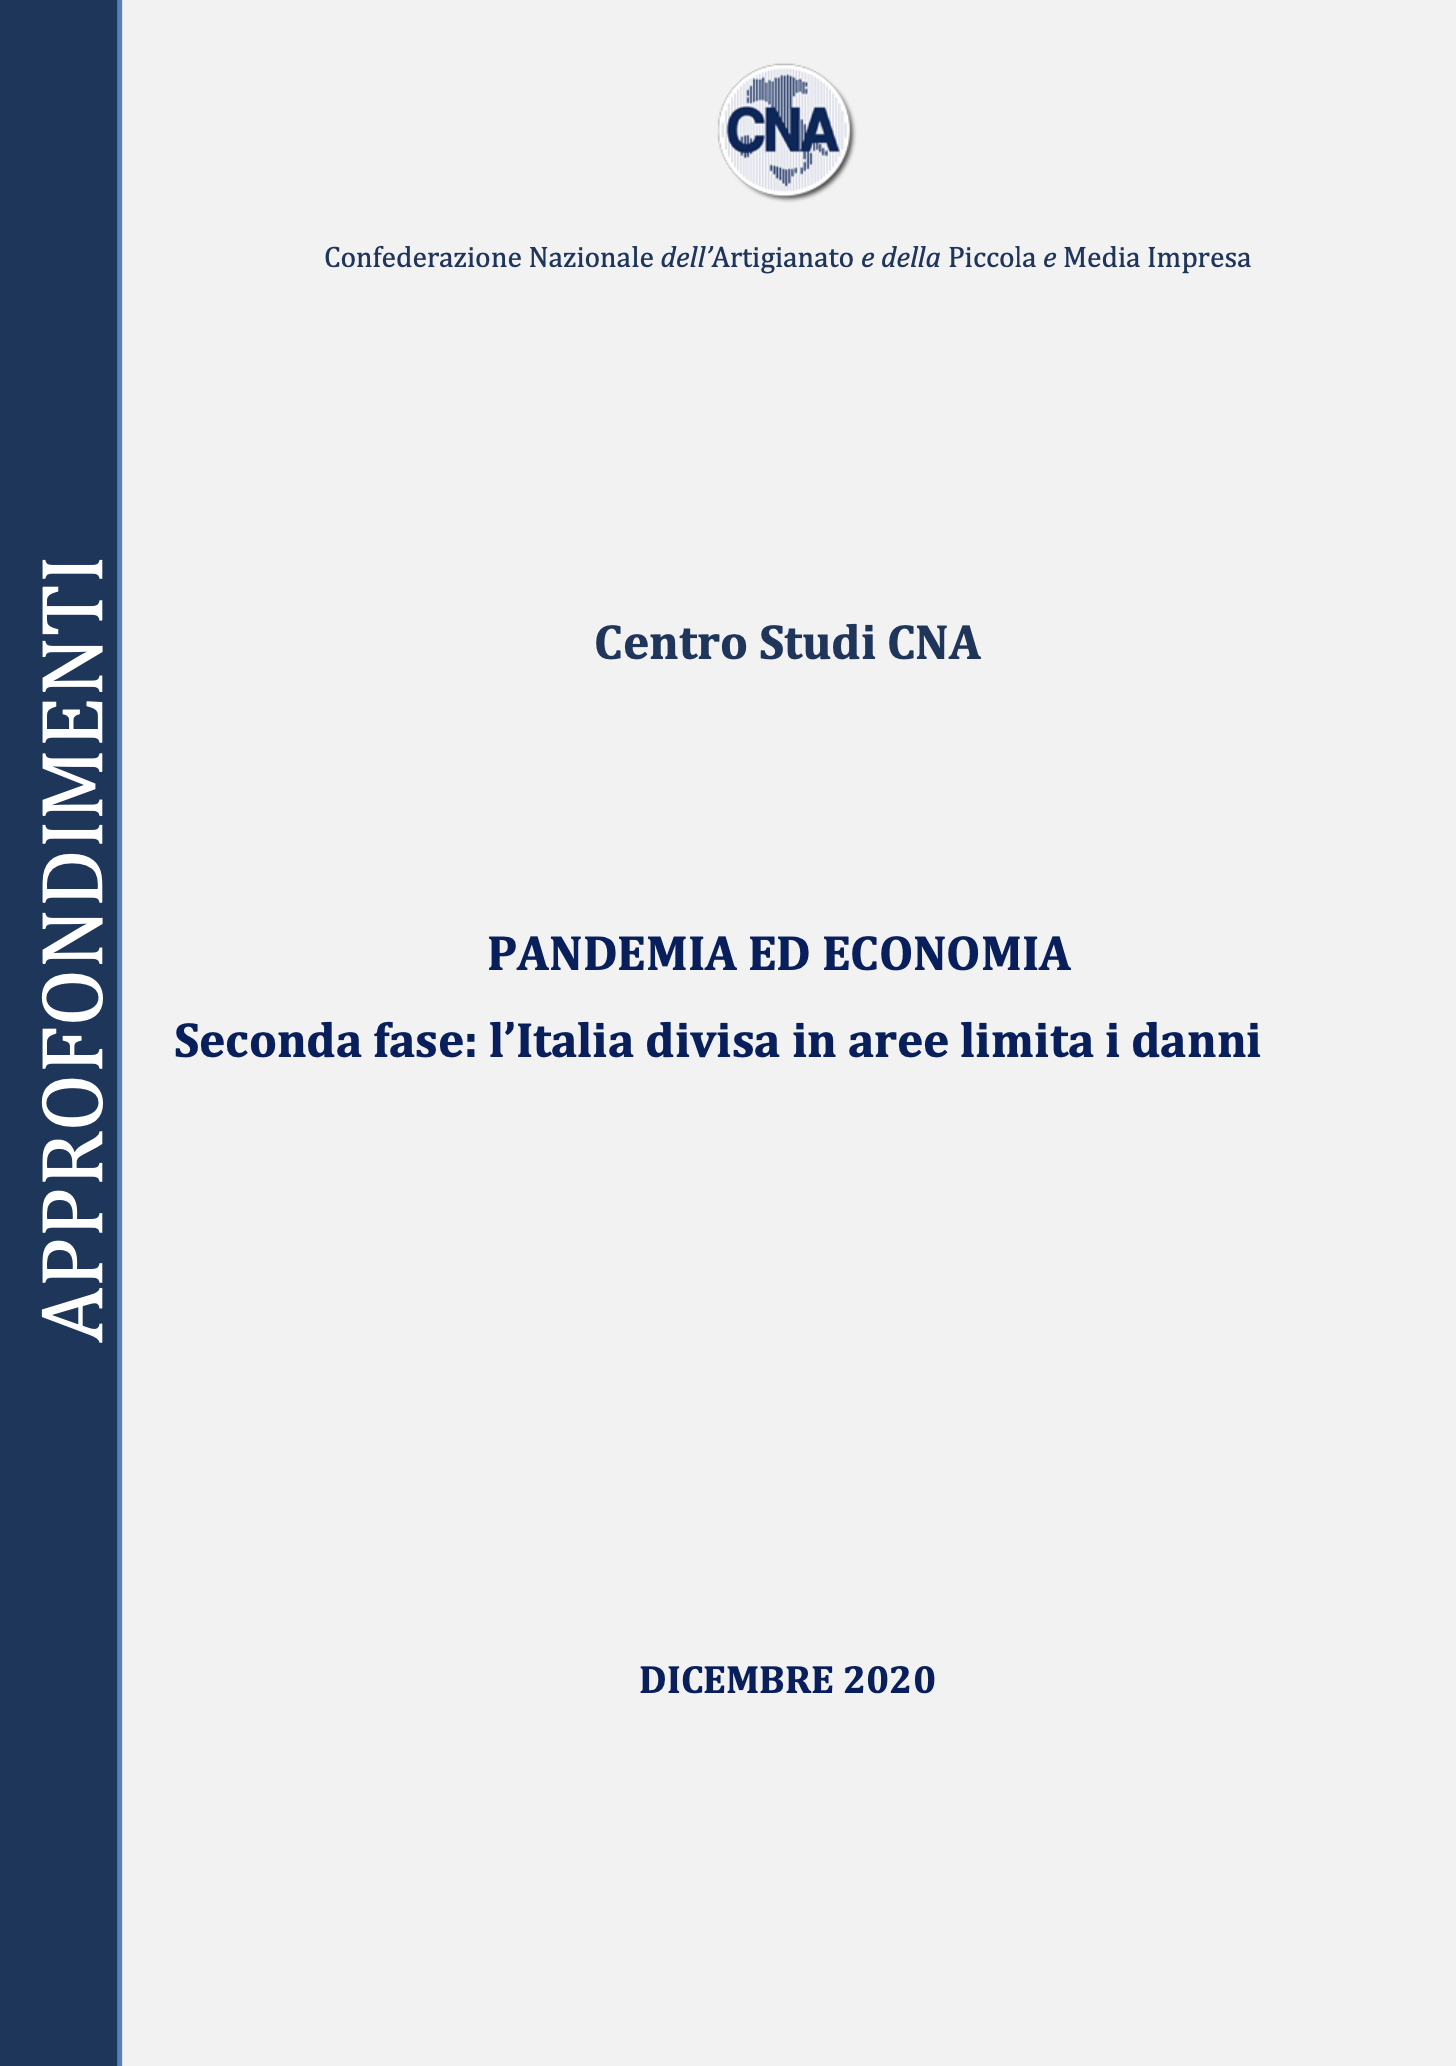 PANDEMIA ED ECONOMIA. SECONDA FASE: L’ITALIA DIVISA IN ZONE LIMITA I DANNI